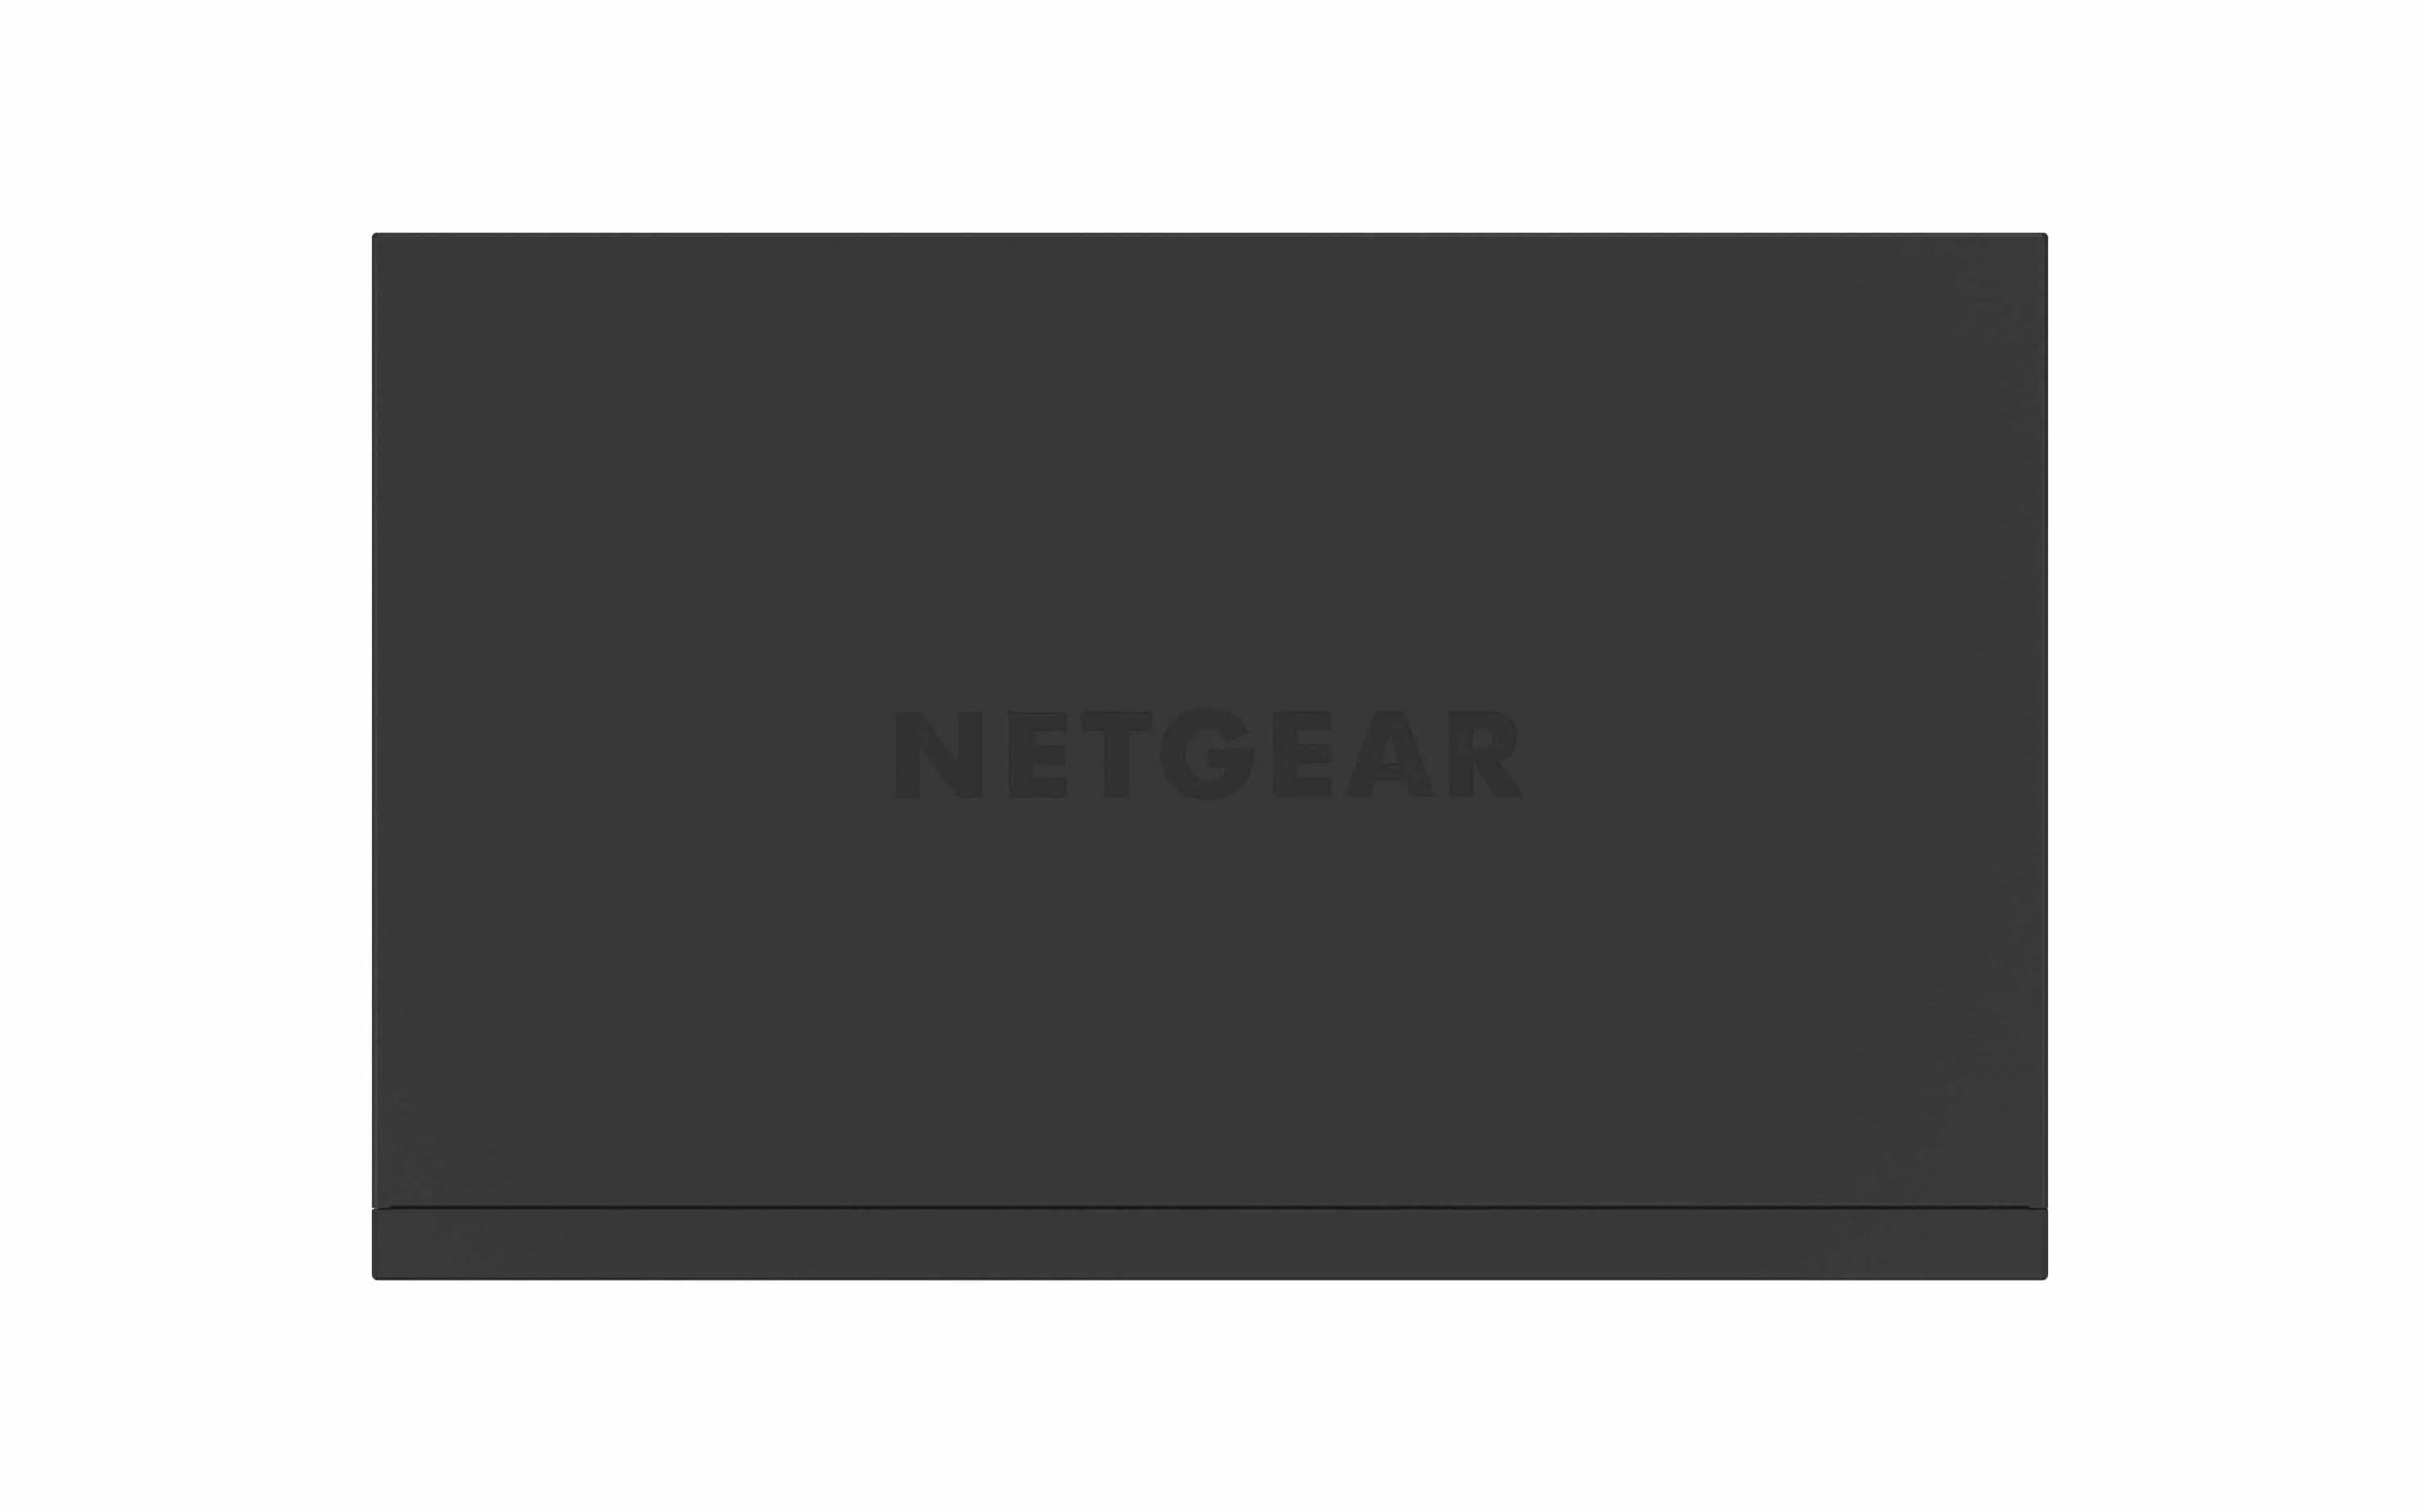 Vente NETGEAR 24PT GIGE UNMANAGED SWITCH W/ POE+ NETGEAR au meilleur prix - visuel 10